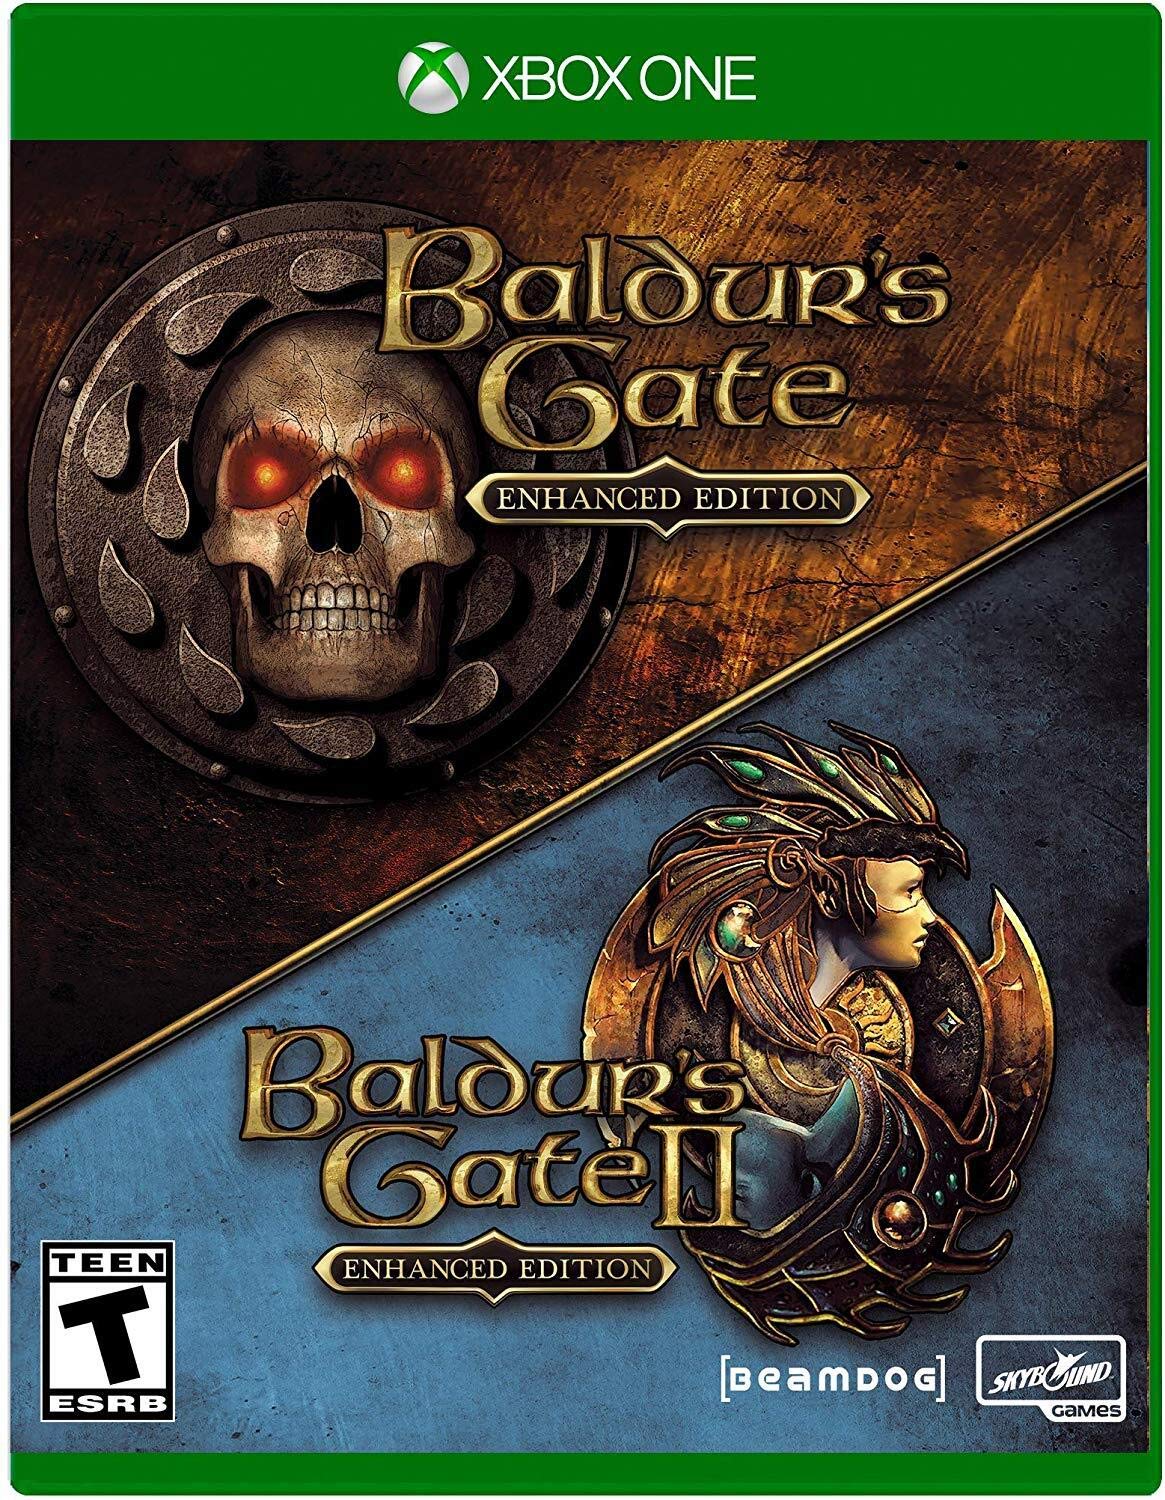 Baldurs Gate Enhanced Edition Xbox